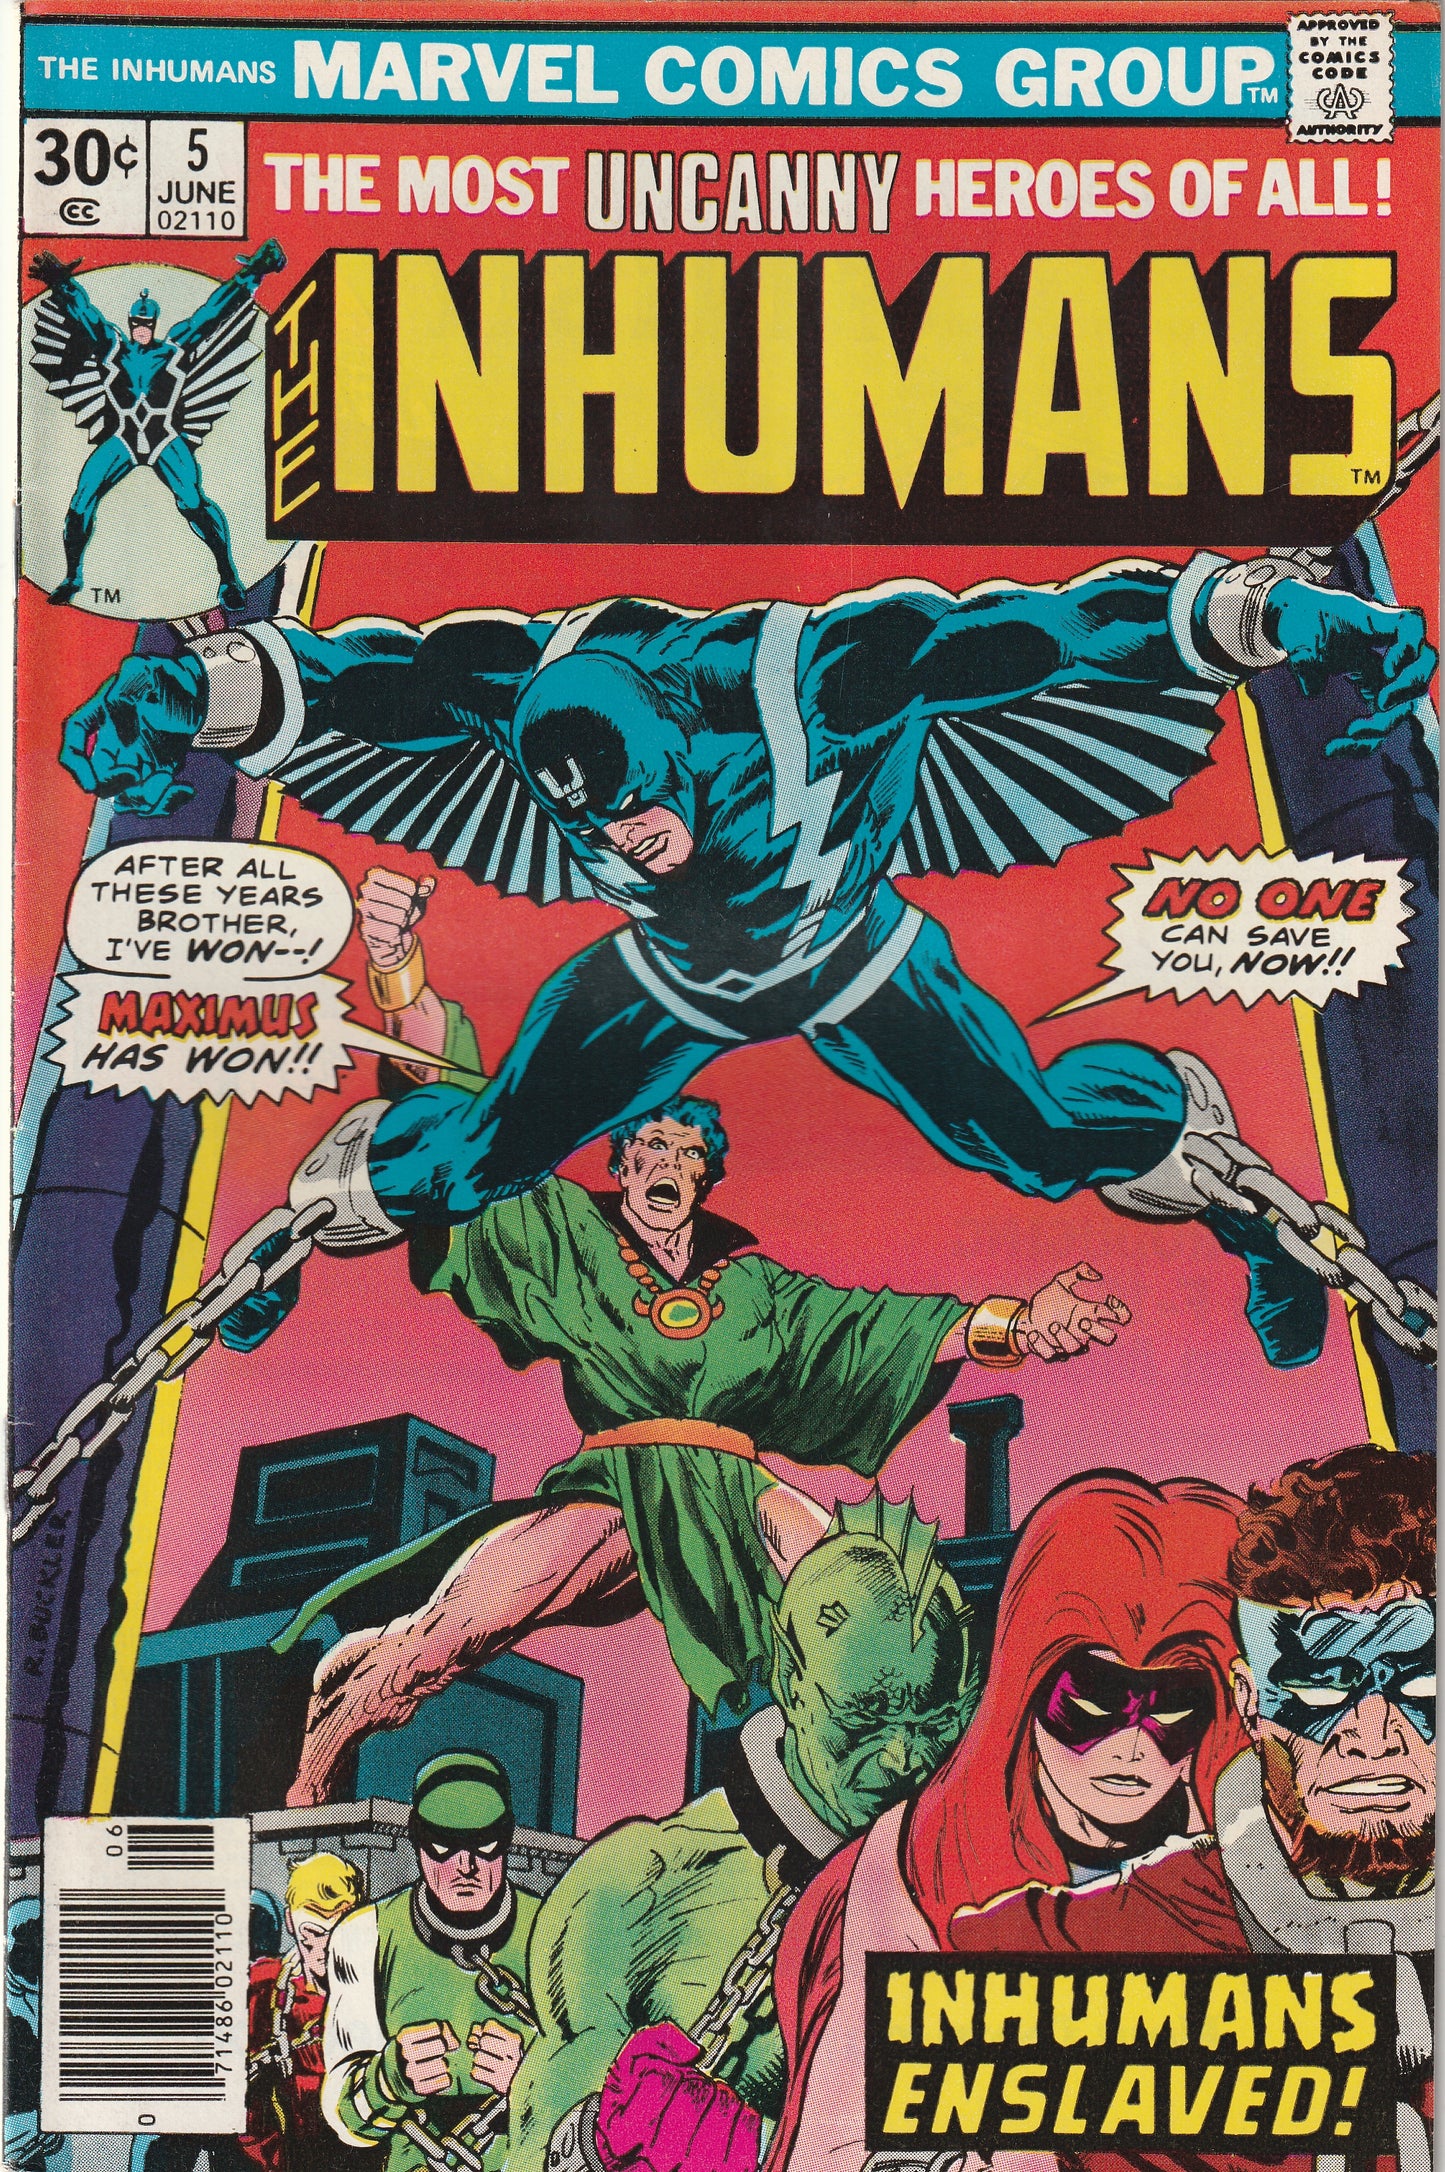 The Inhumans #5 (1976) - Death of Shatterstar.